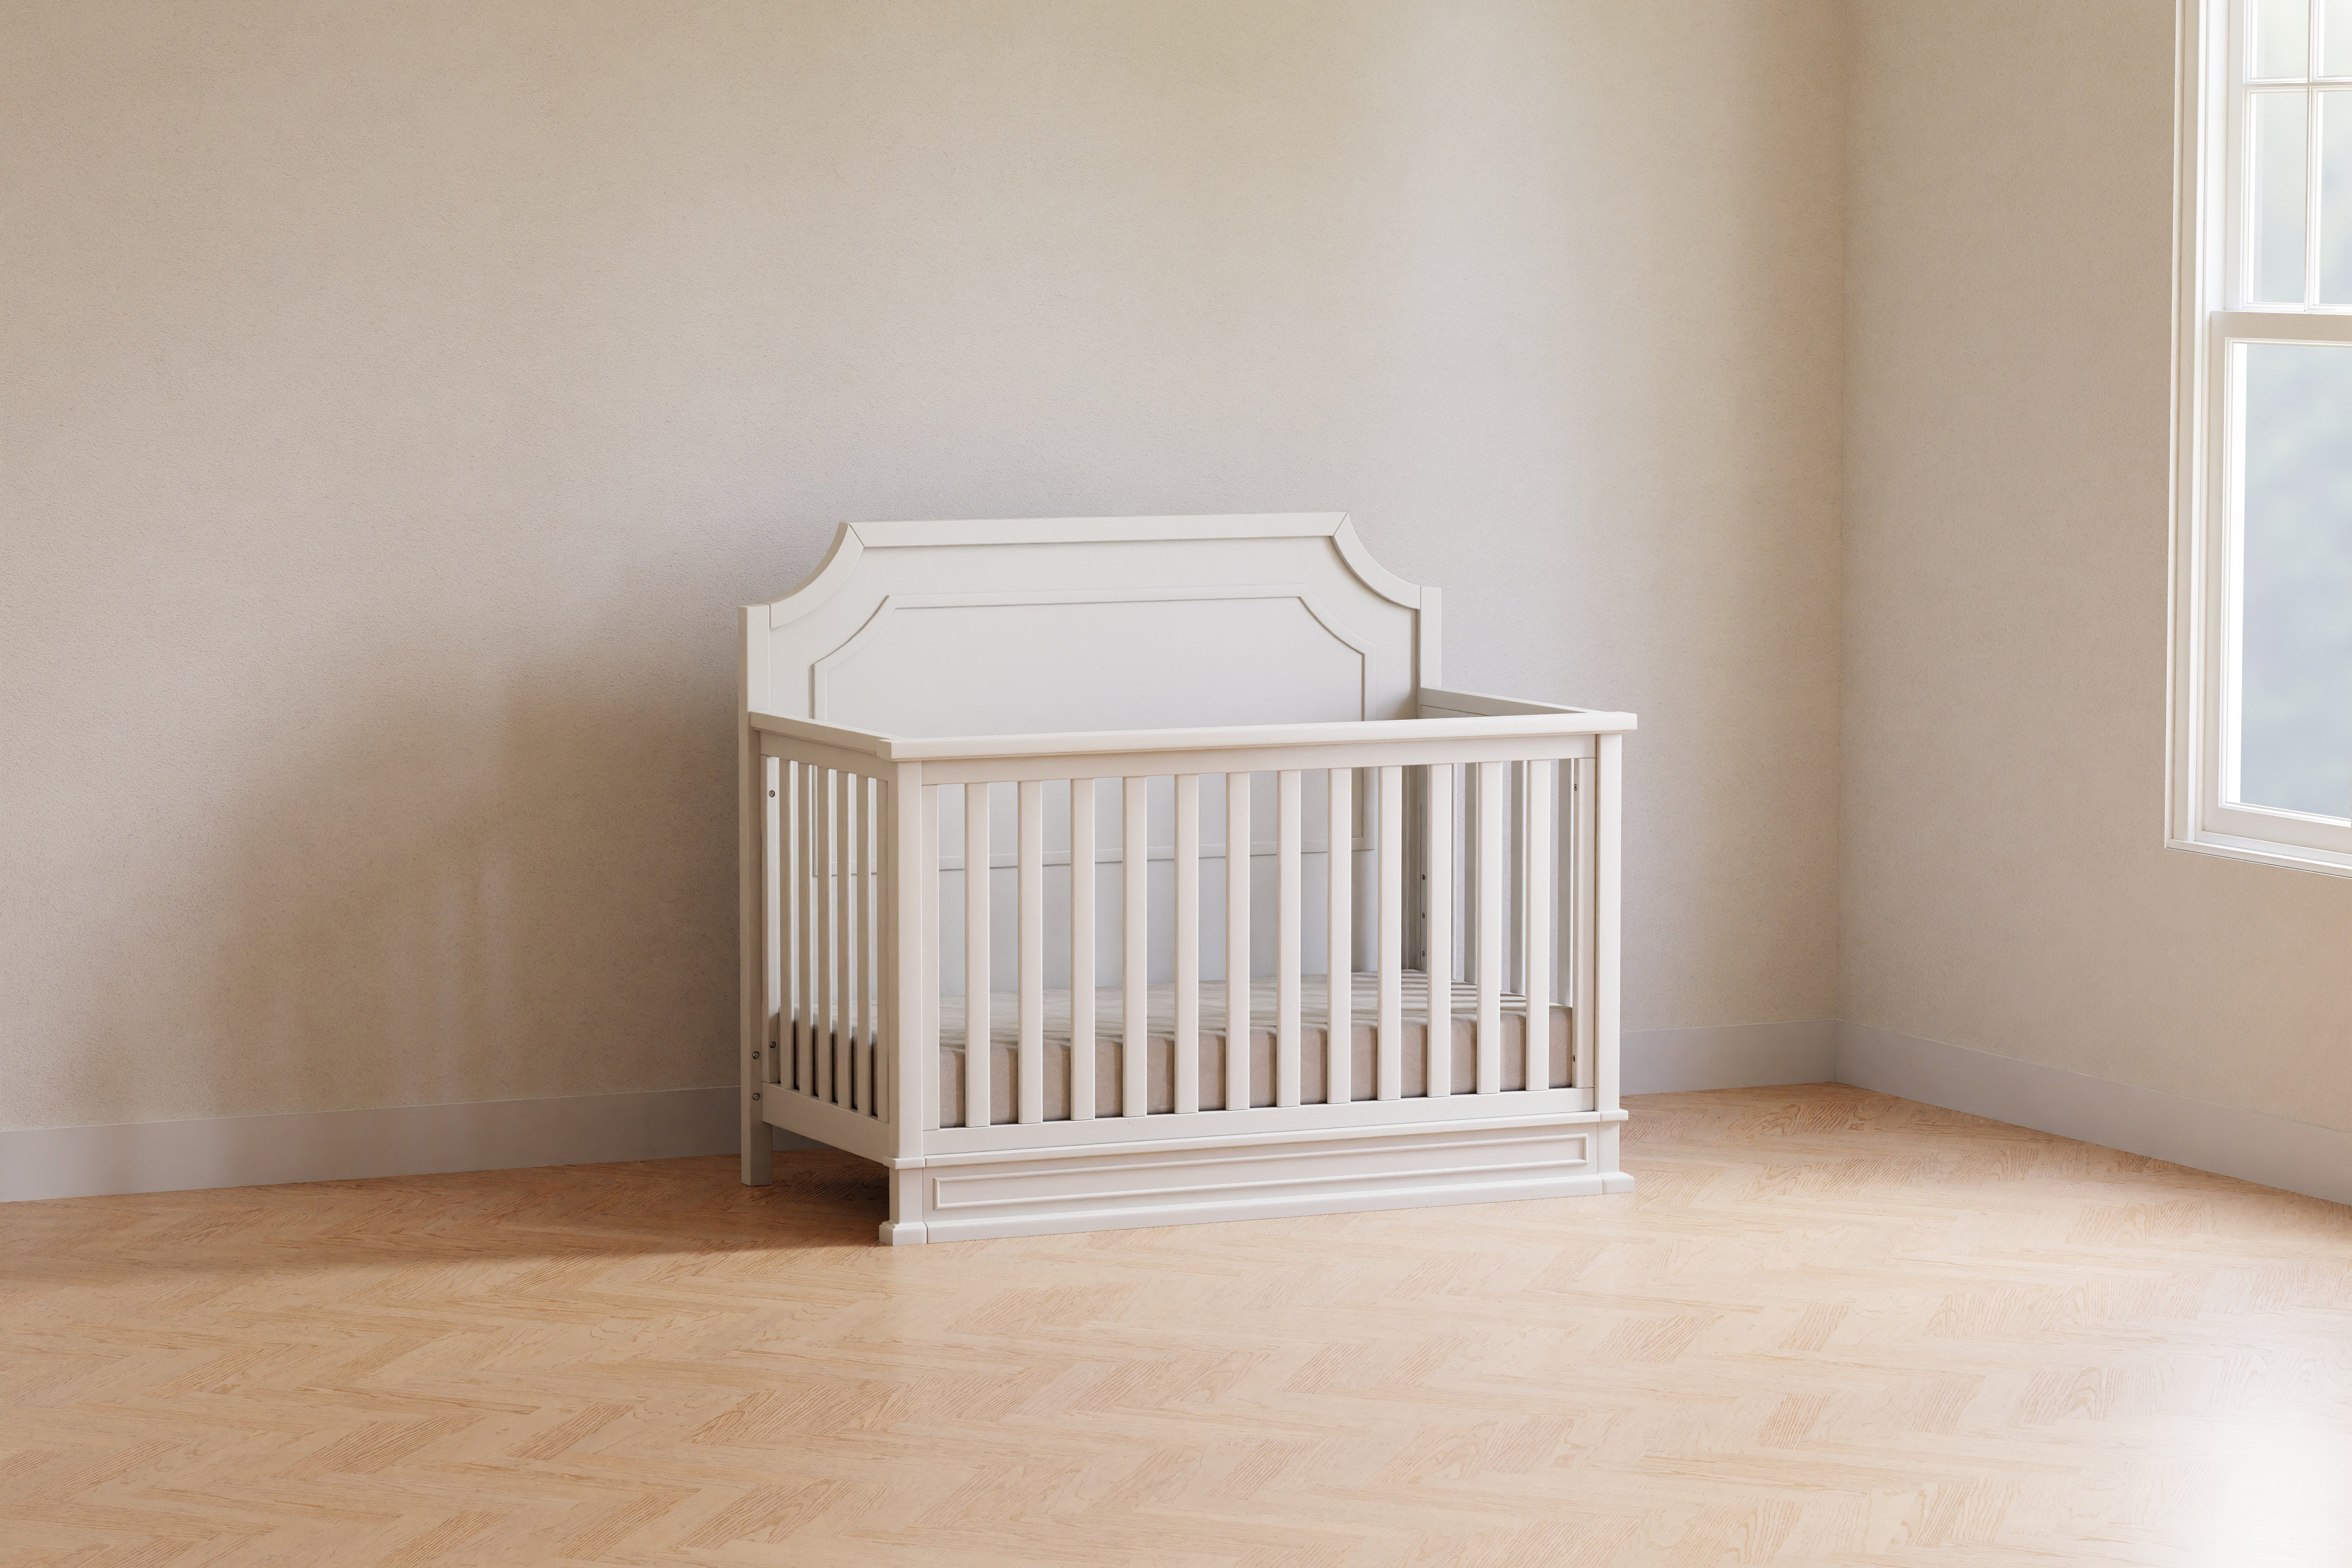 Emma Regency 4-in-1 Convertible Crib - Warm White - Twinkle Twinkle Little One